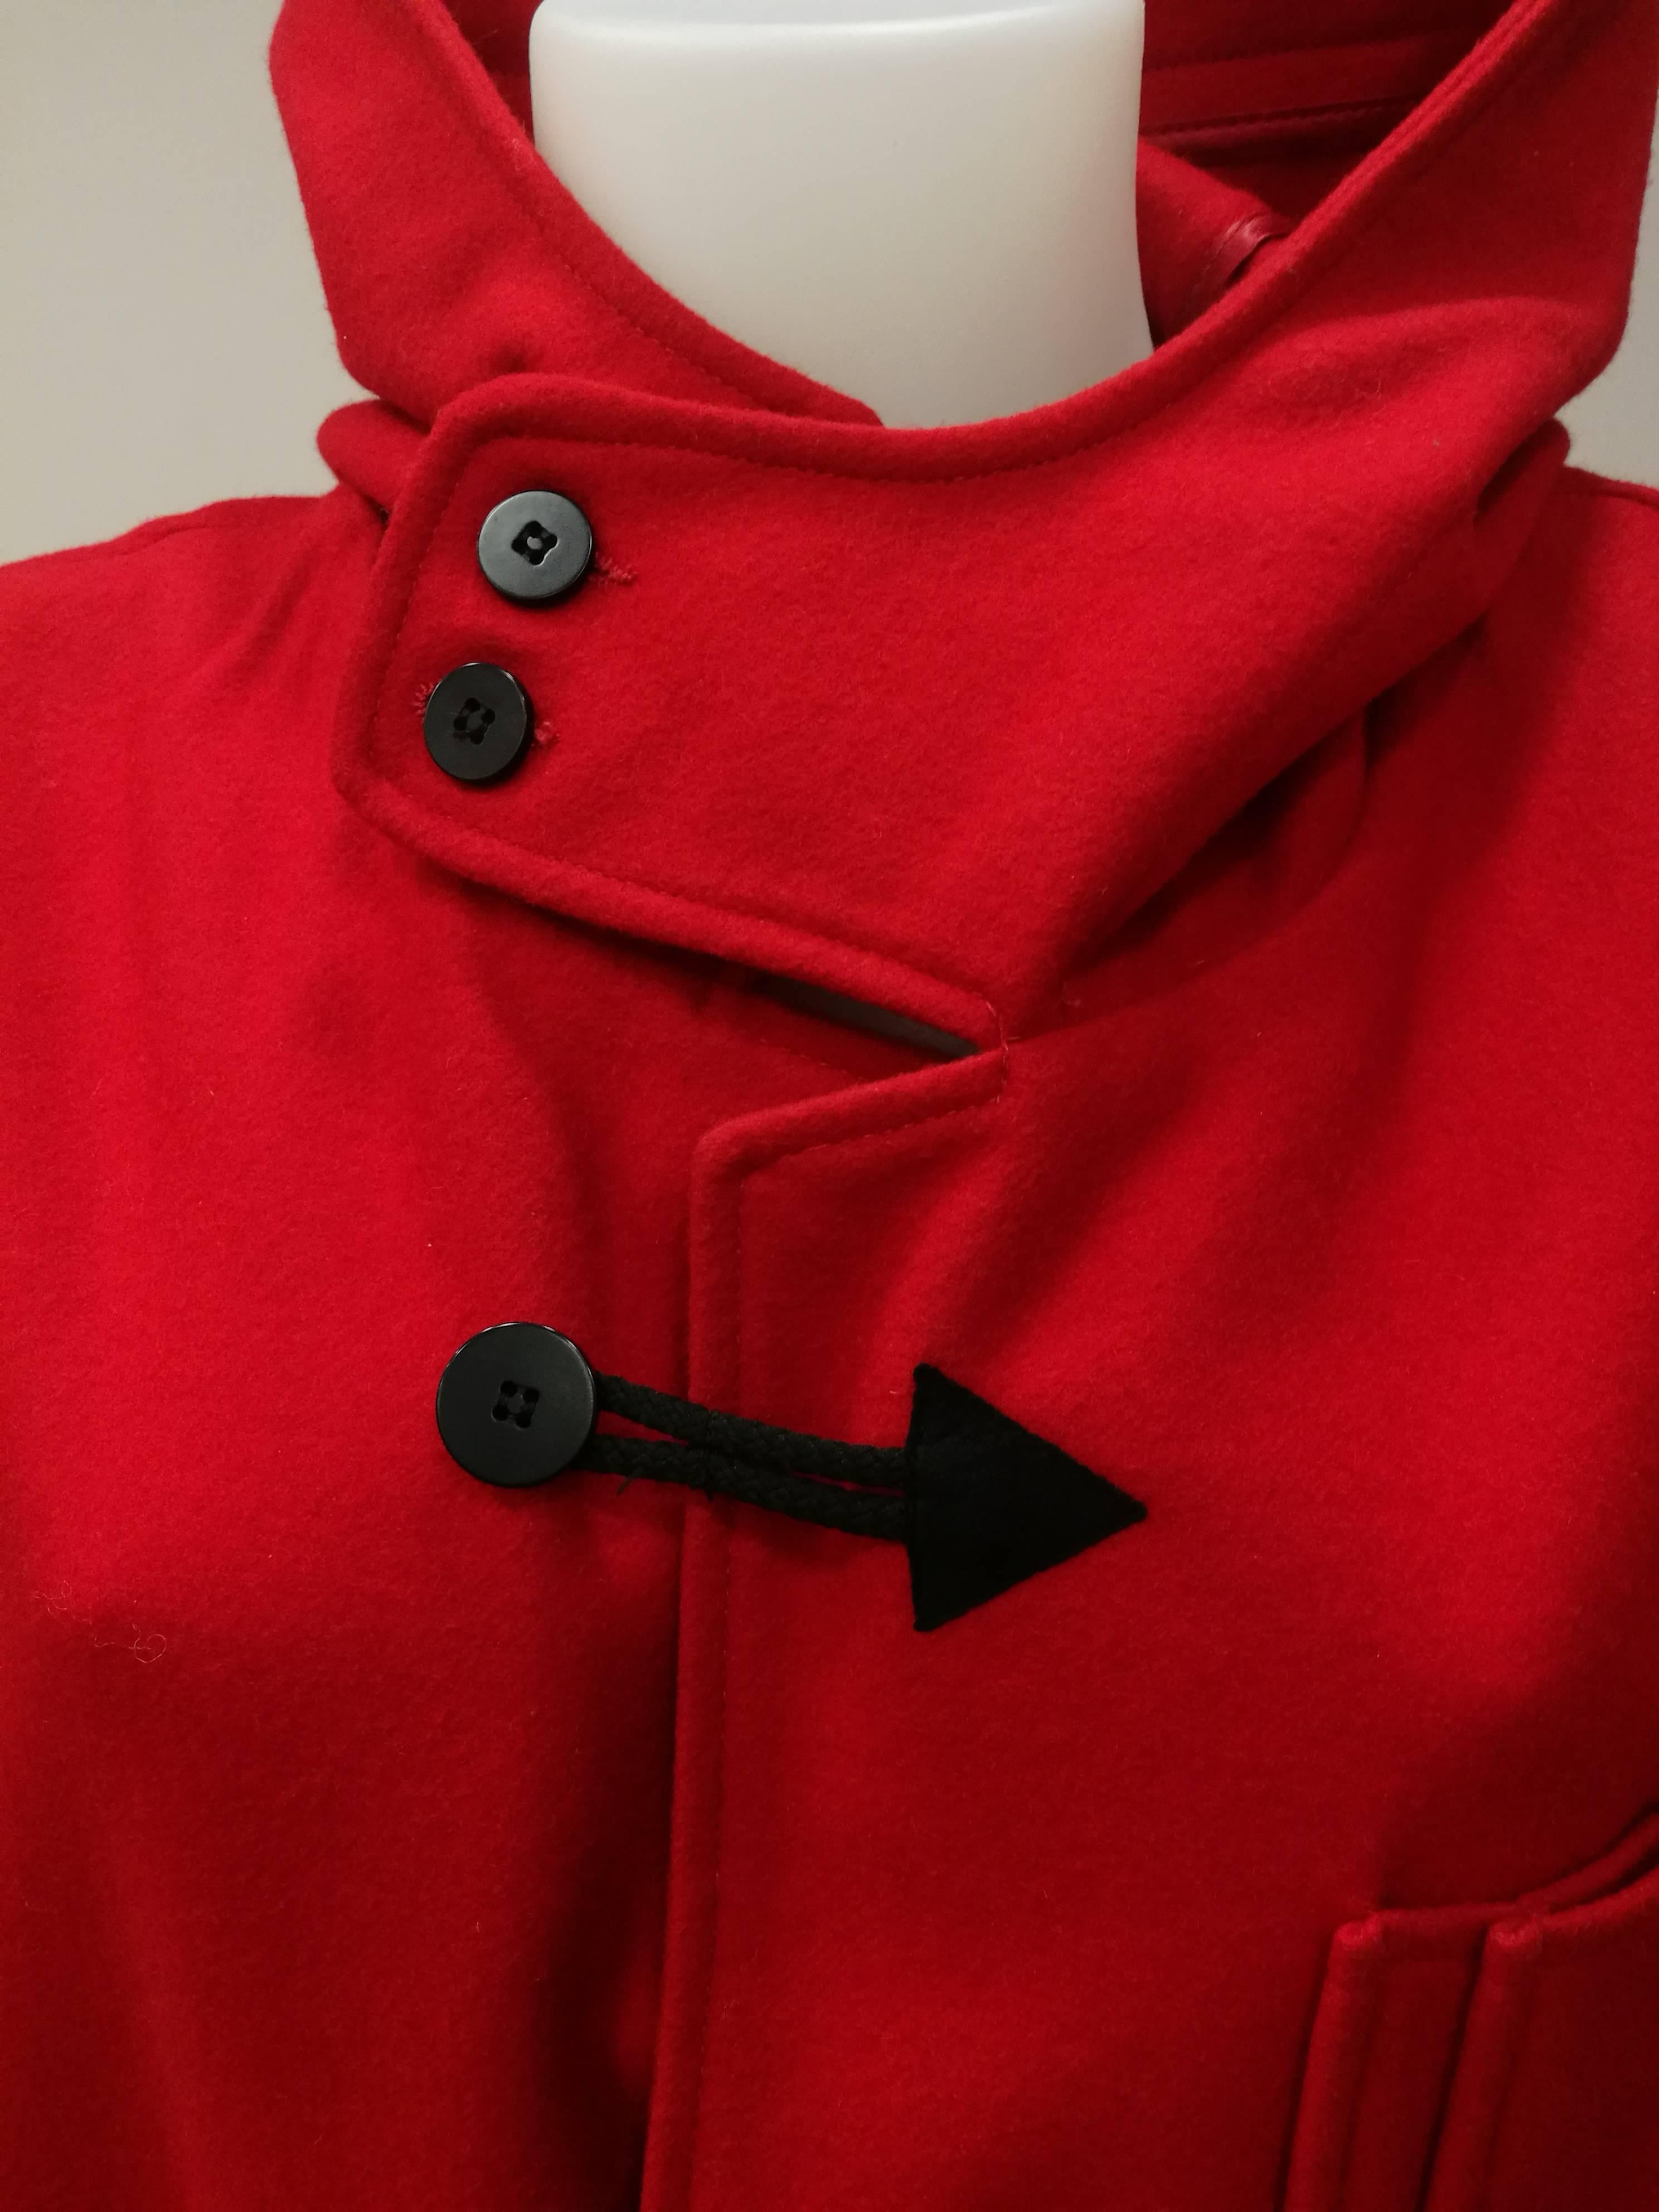 Rare manteau rouge J.C. de Castelbajac 

Manteau rare et unique de J.C. de Castelbajac avec inserts noirs, flèches et motifs.

Composition : 75 laine 20 nylon 5 autres

